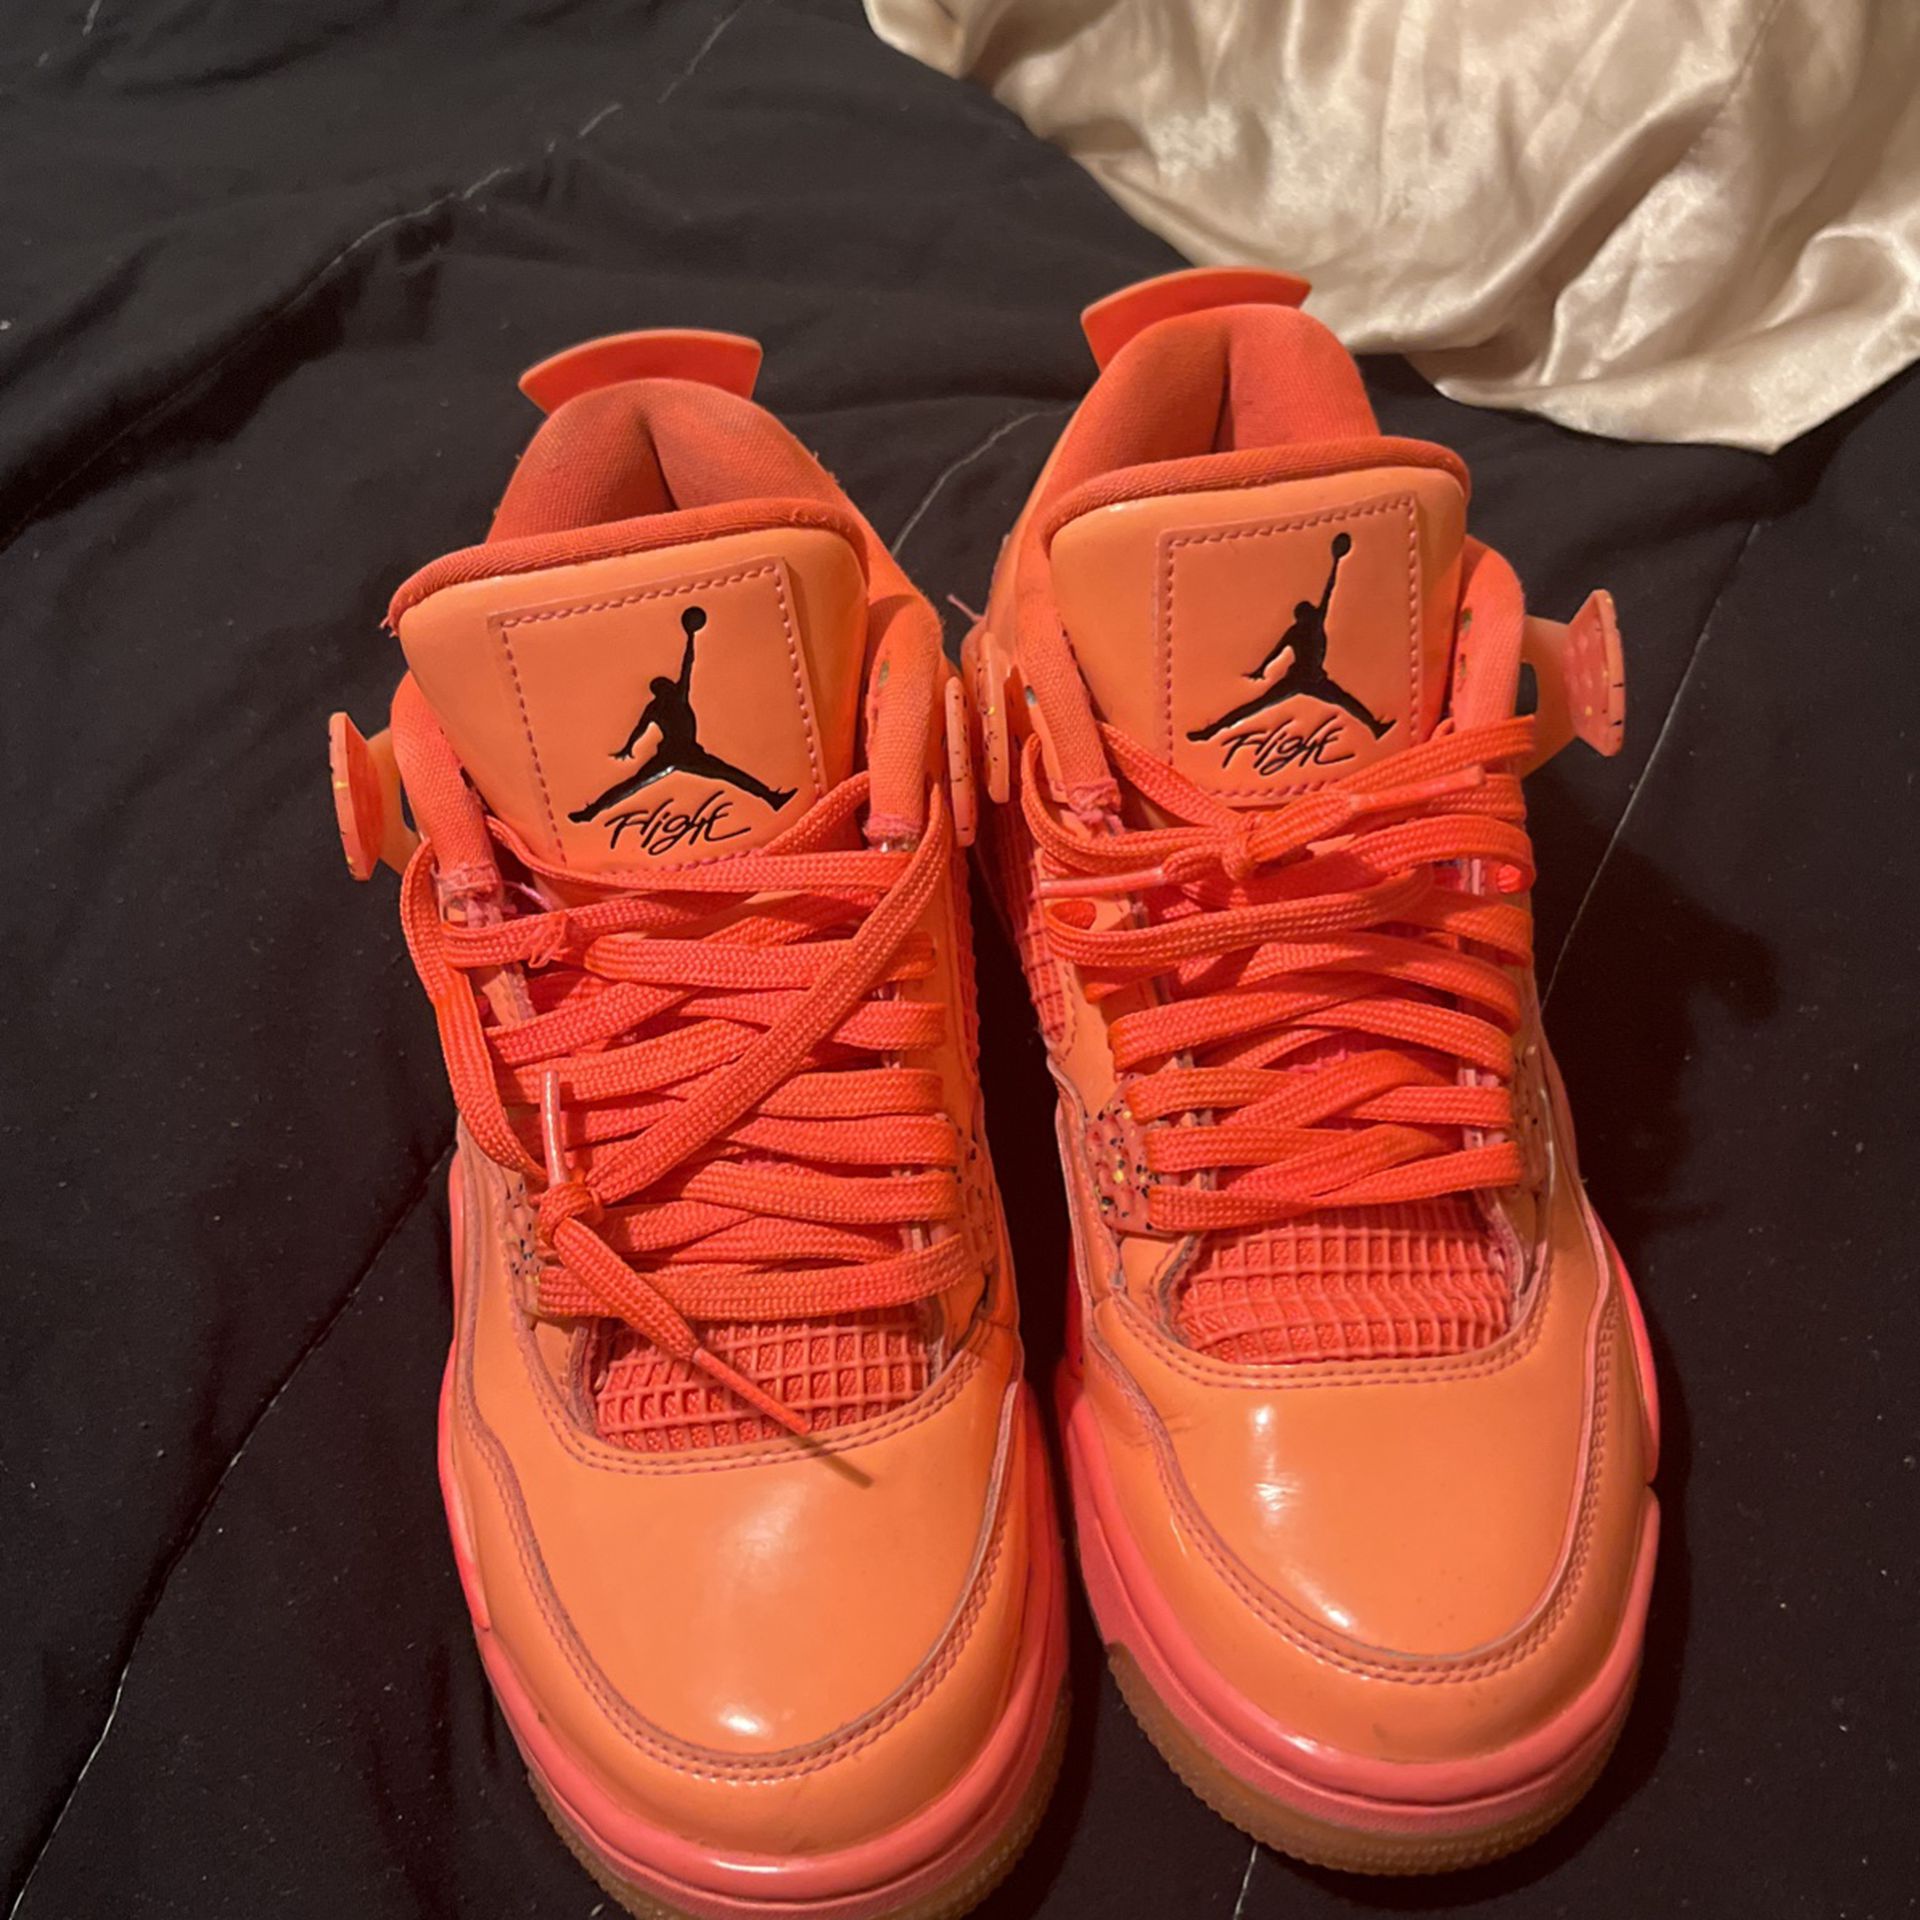 Orange/Pink Jordan 4s Size 8 Worn 1 Time